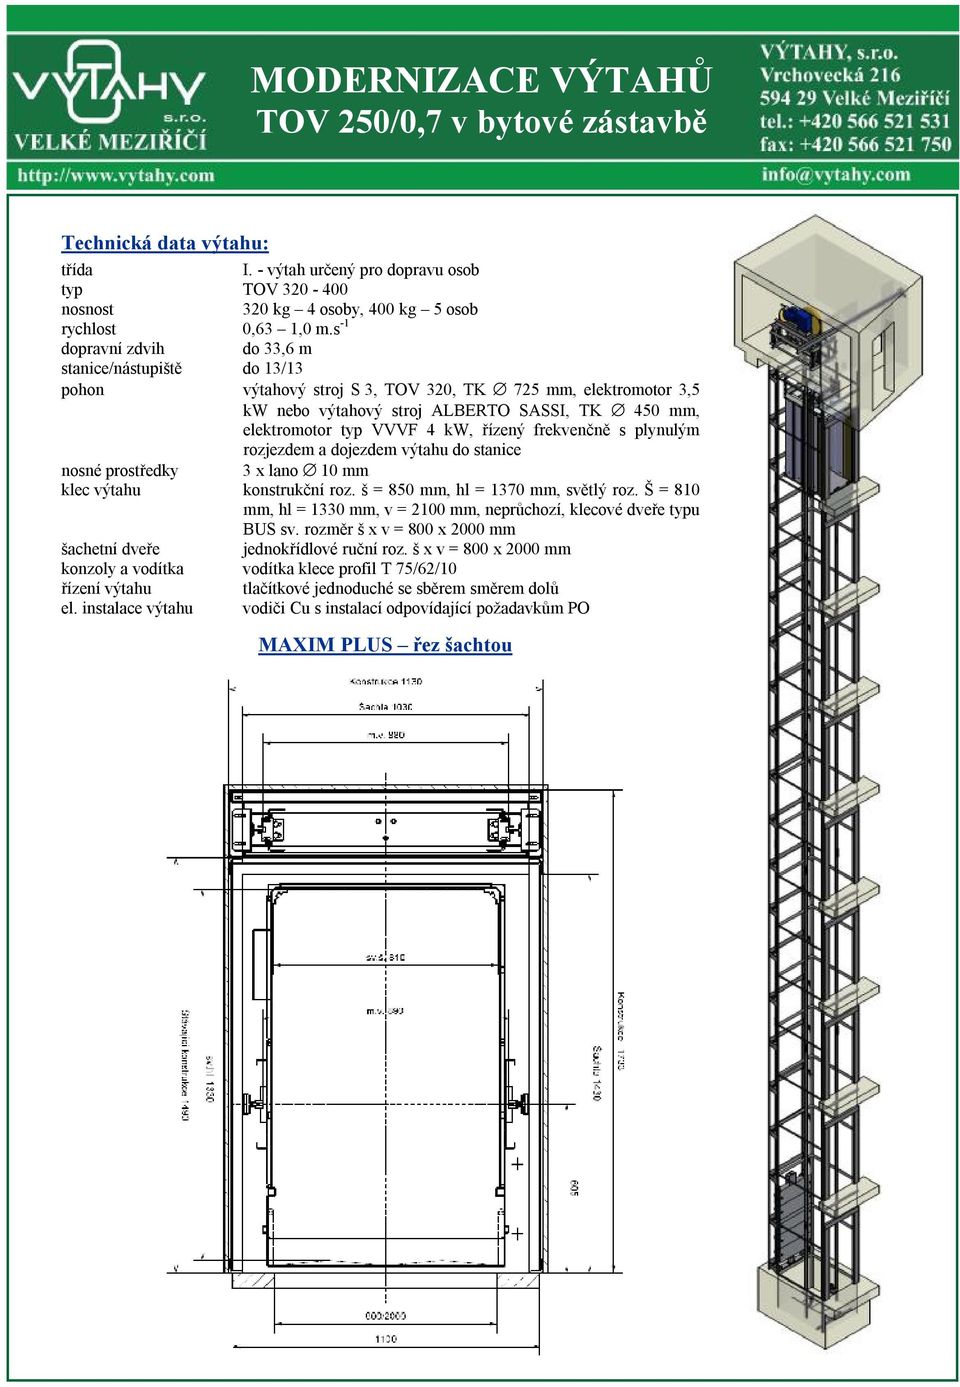 řízený frekvenčně s plynulým rozjezdem a dojezdem výtahu do stanice nosné prostředky 3 x lano 10 mm klec výtahu konstrukční roz. š = 850 mm, hl = 1370 mm, světlý roz.